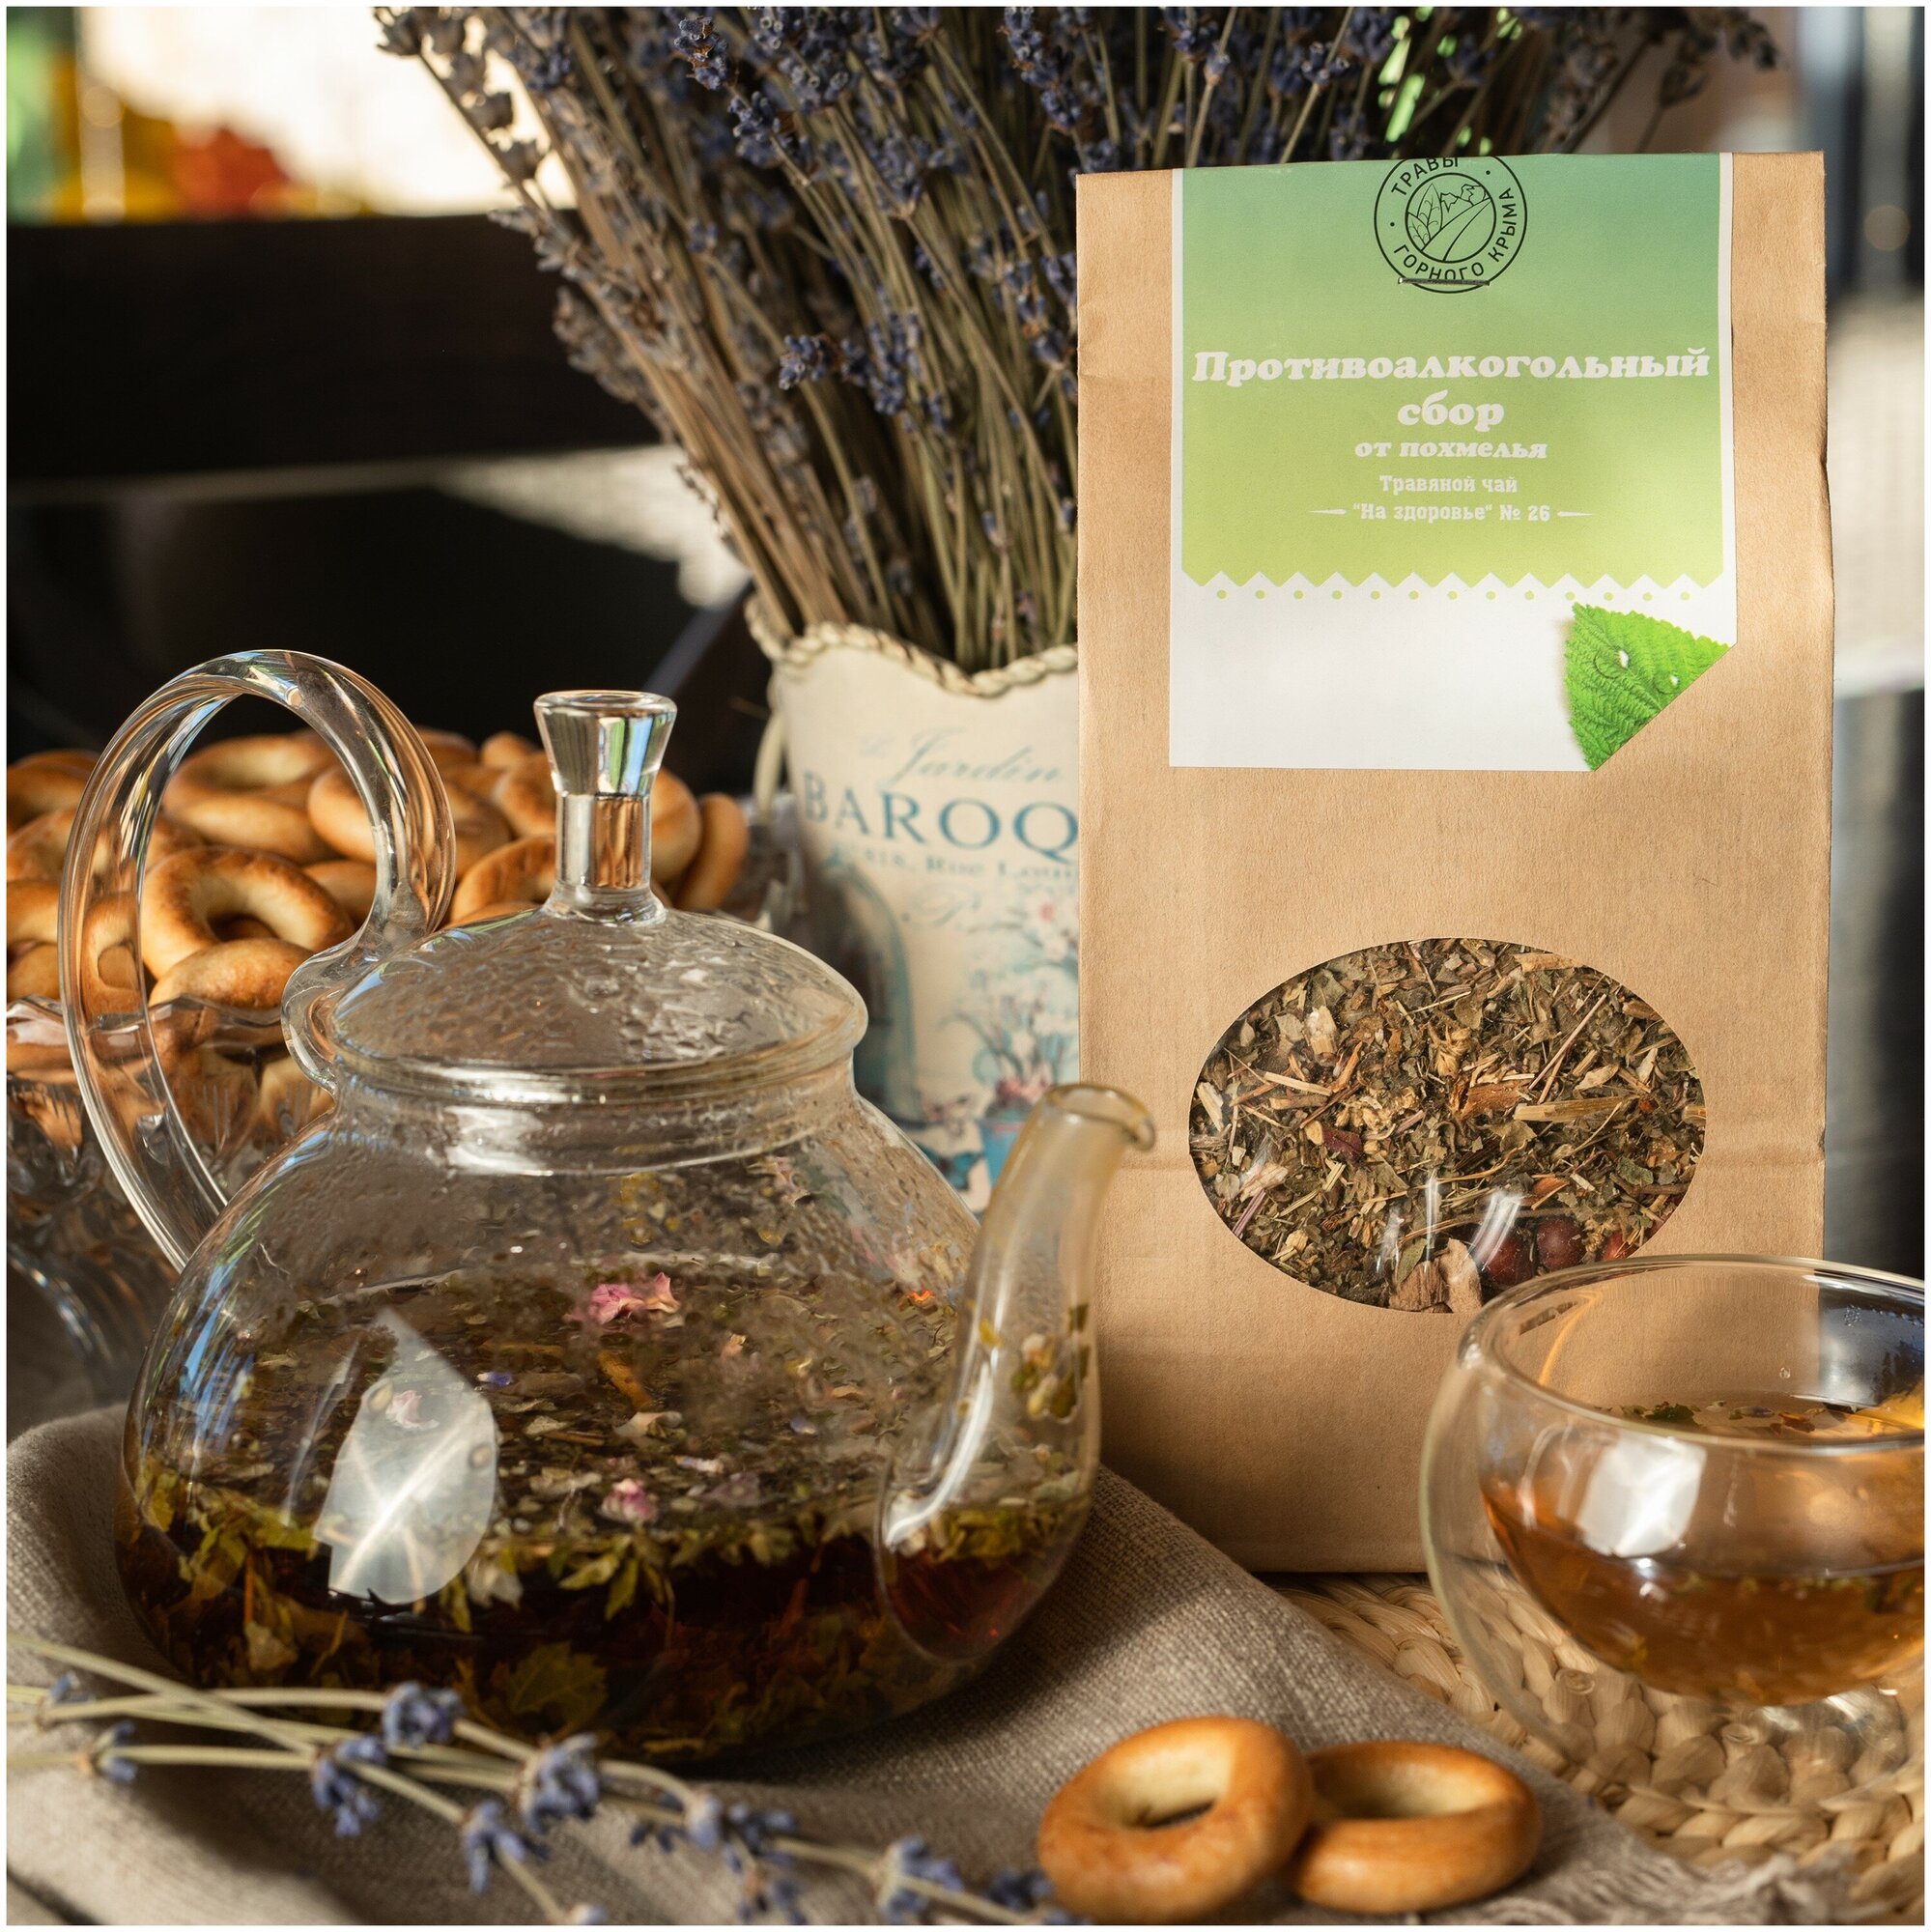 Травяной чай от похмелья противоалкогольный сбор фиточай 100 гр